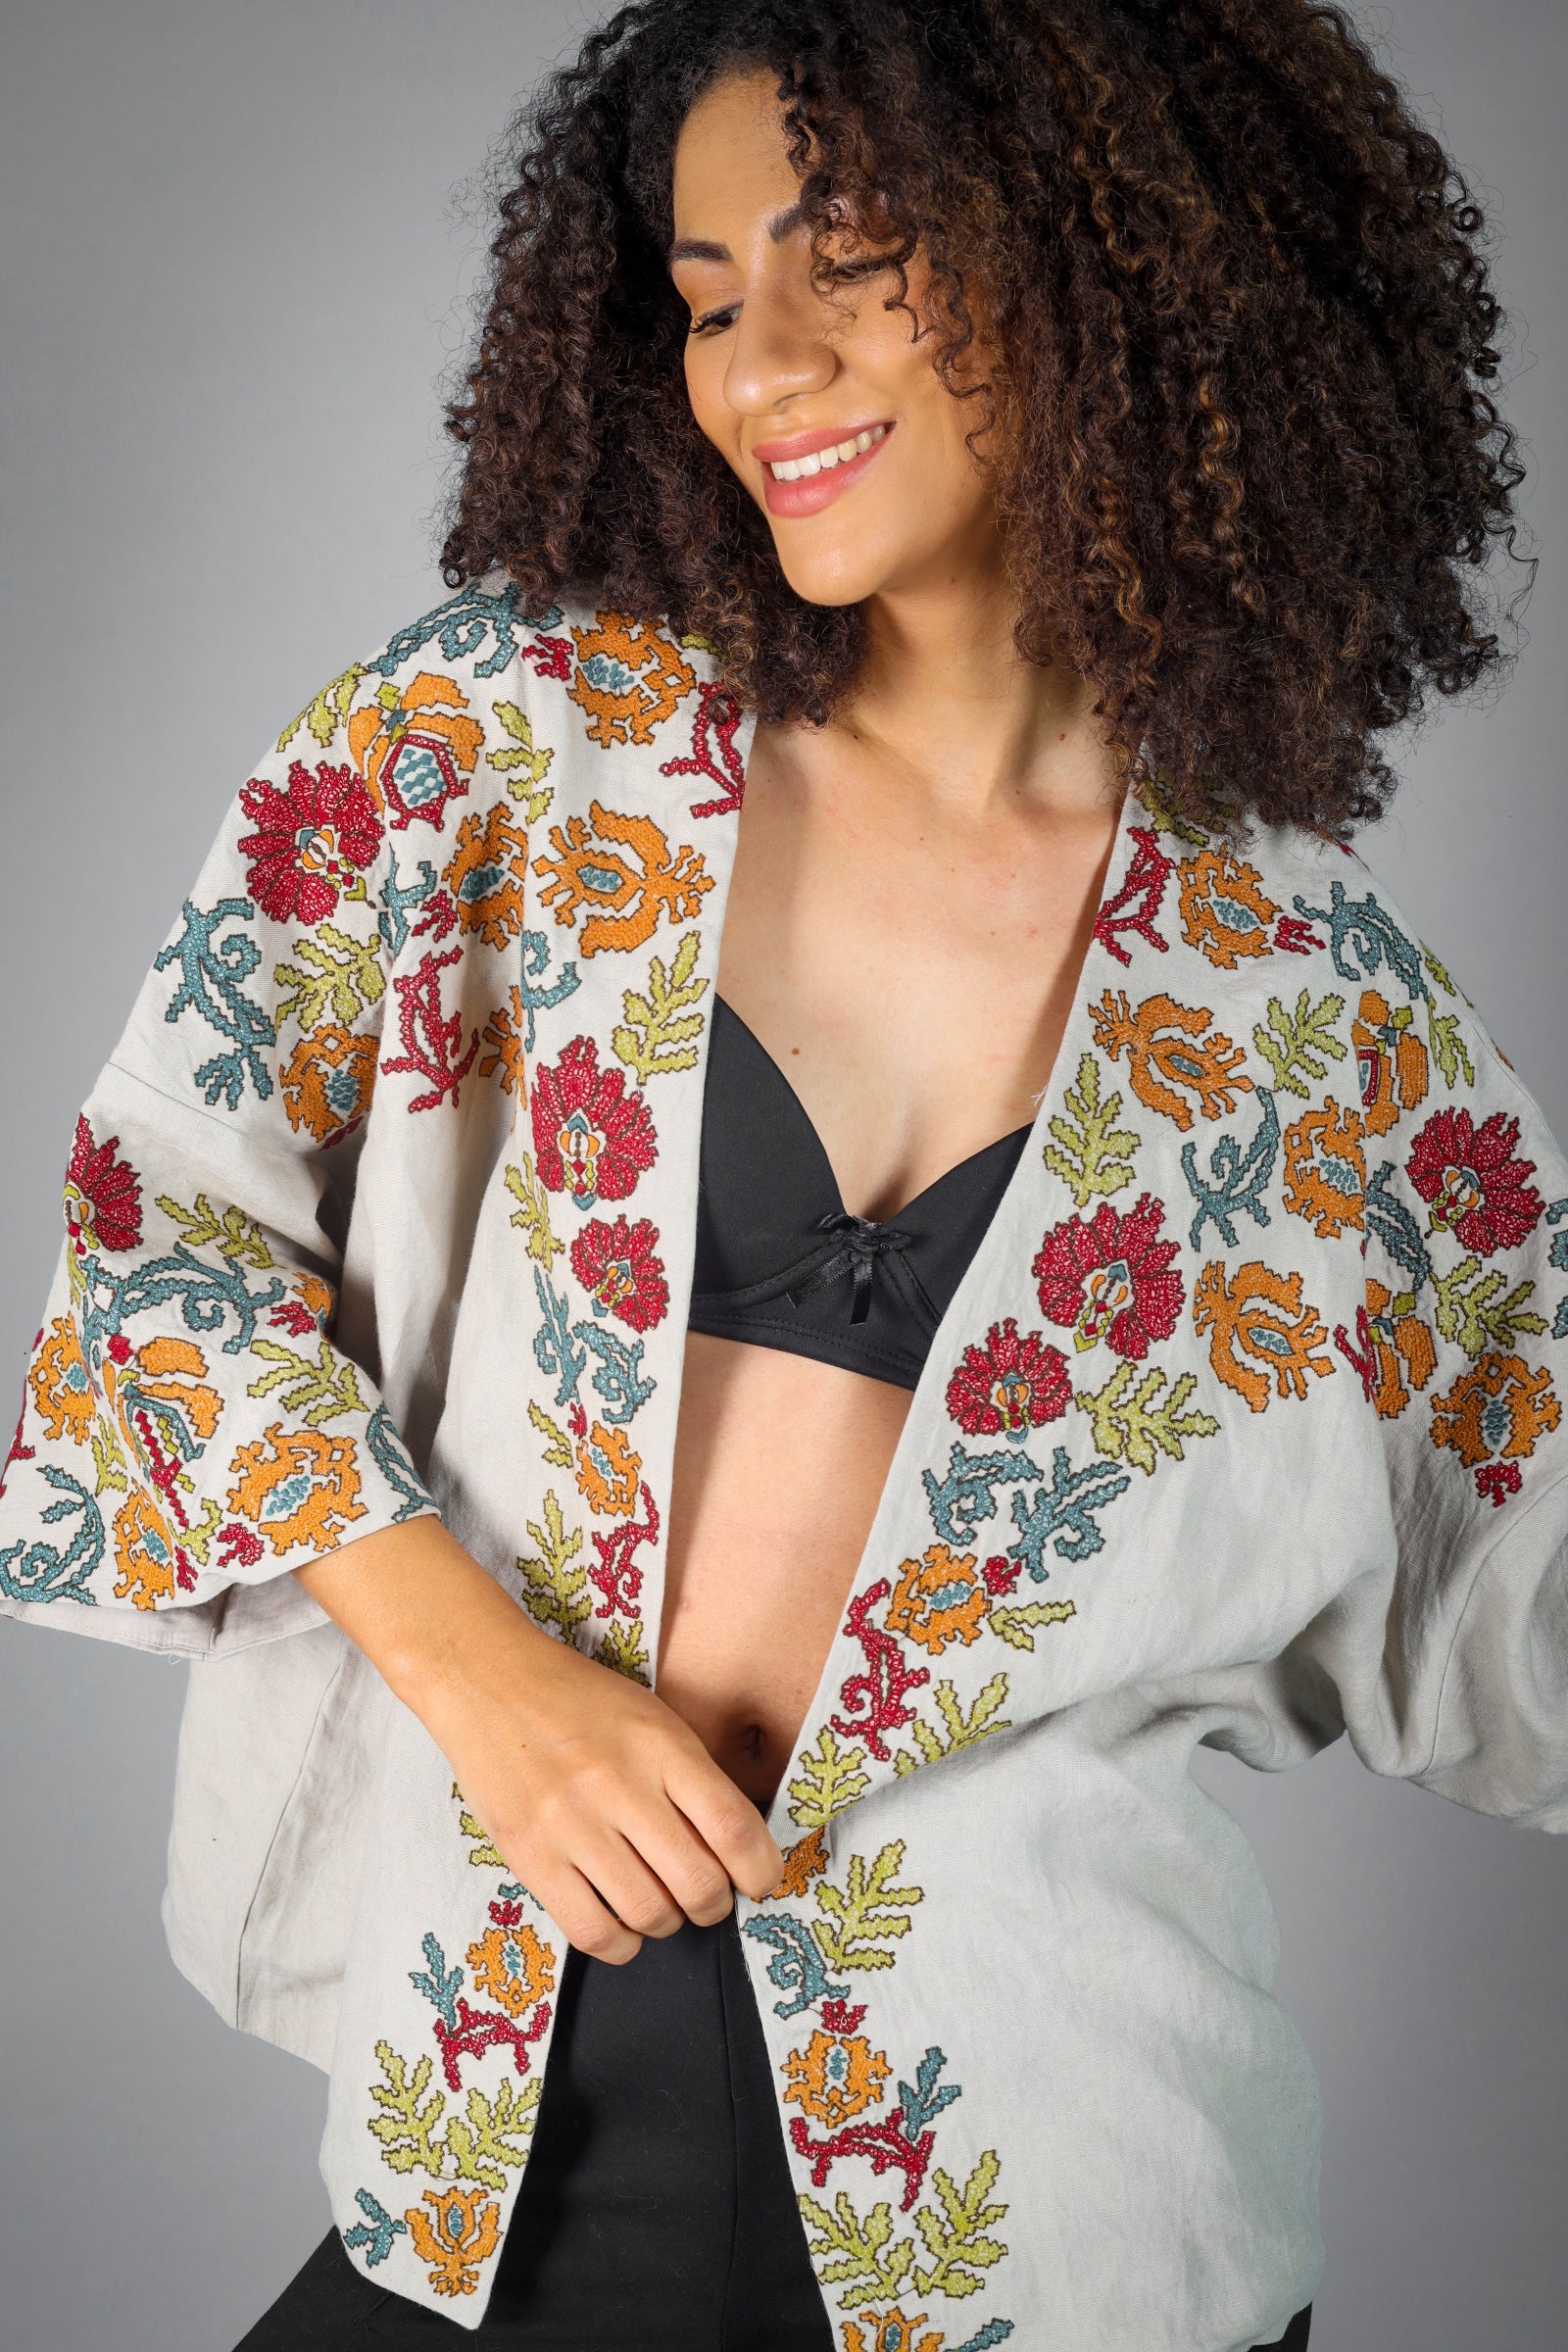 Anouk Embroidered Kimono/Shrug (Free Size)